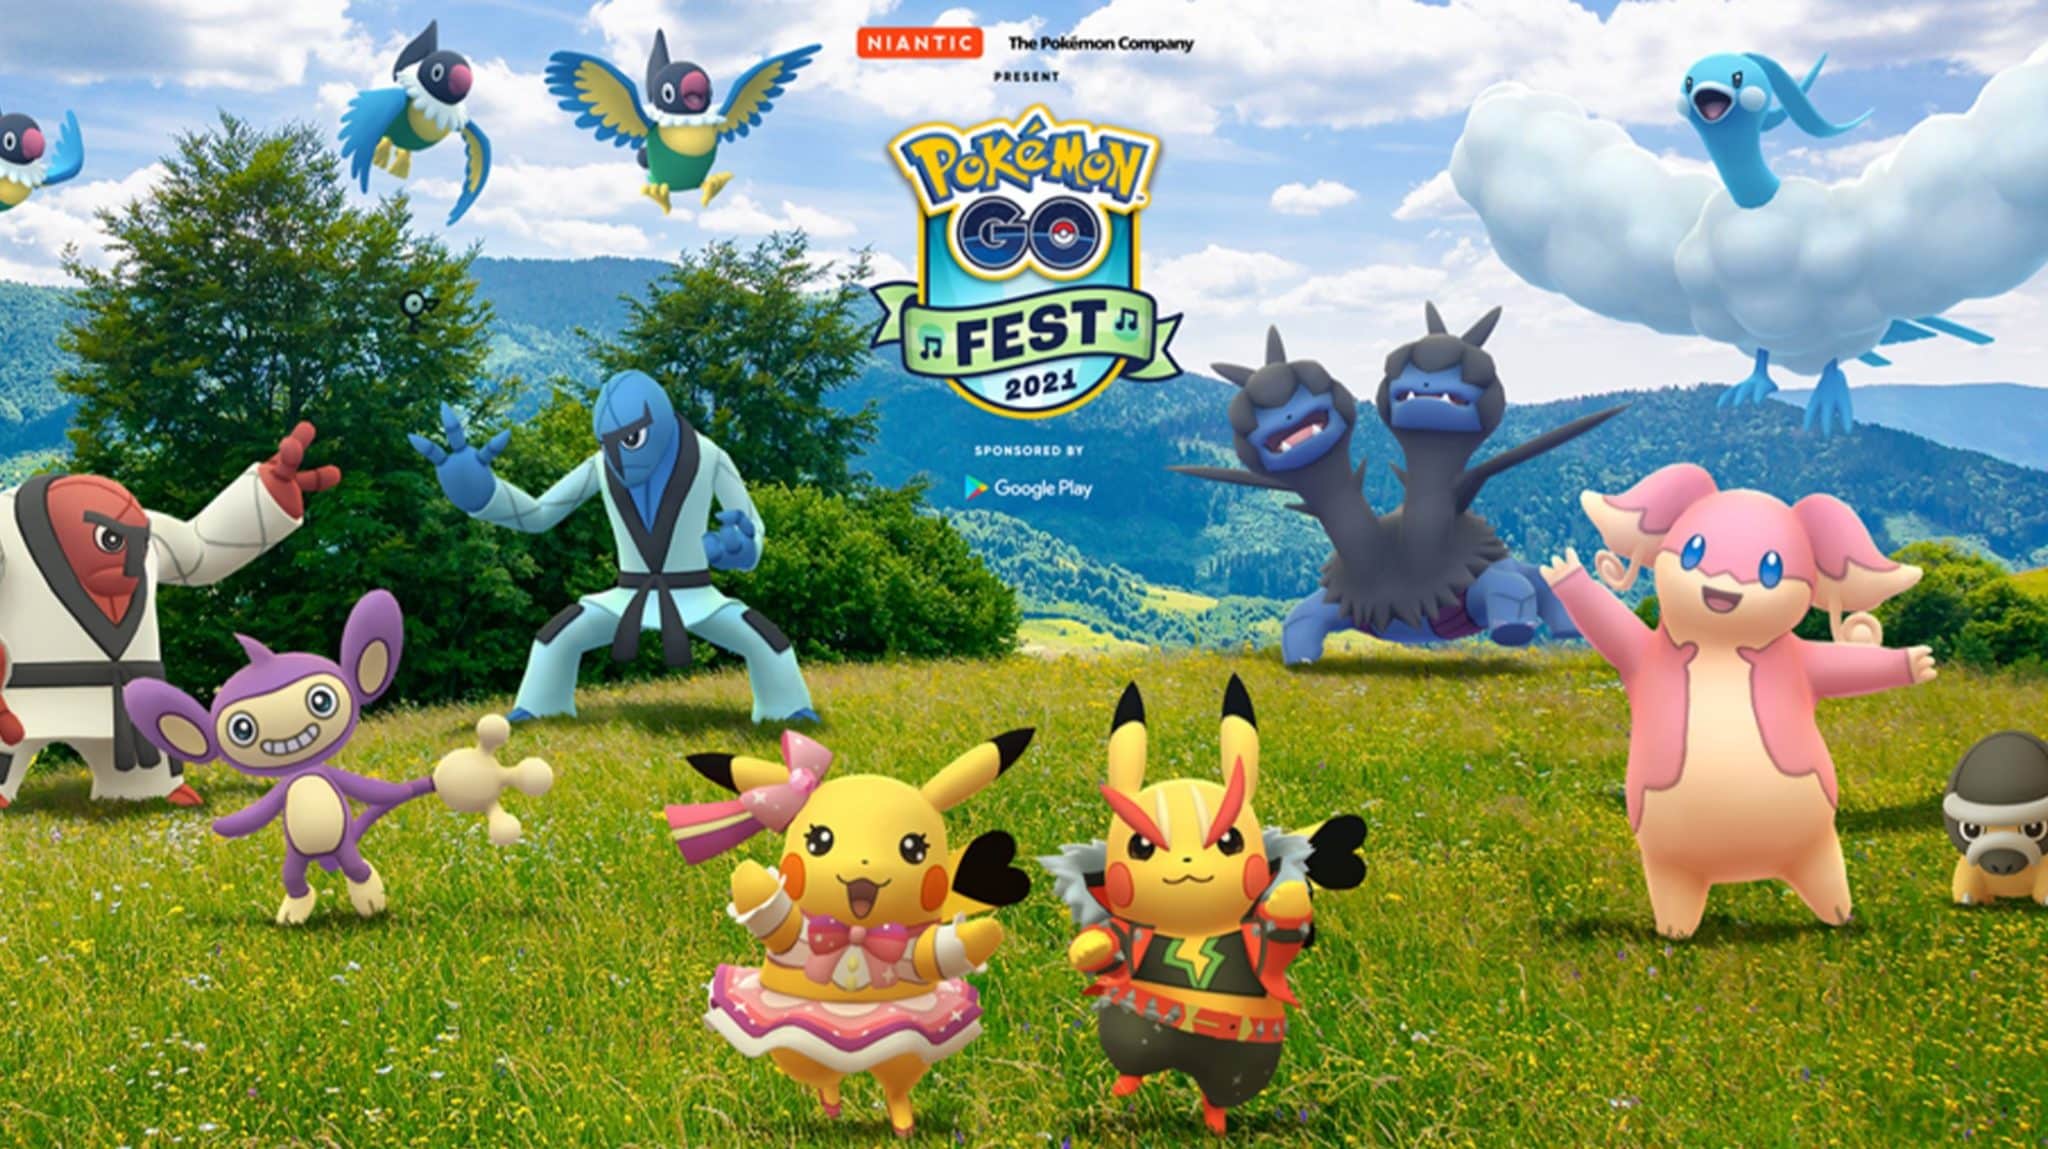 Pokemon Go Fest locations